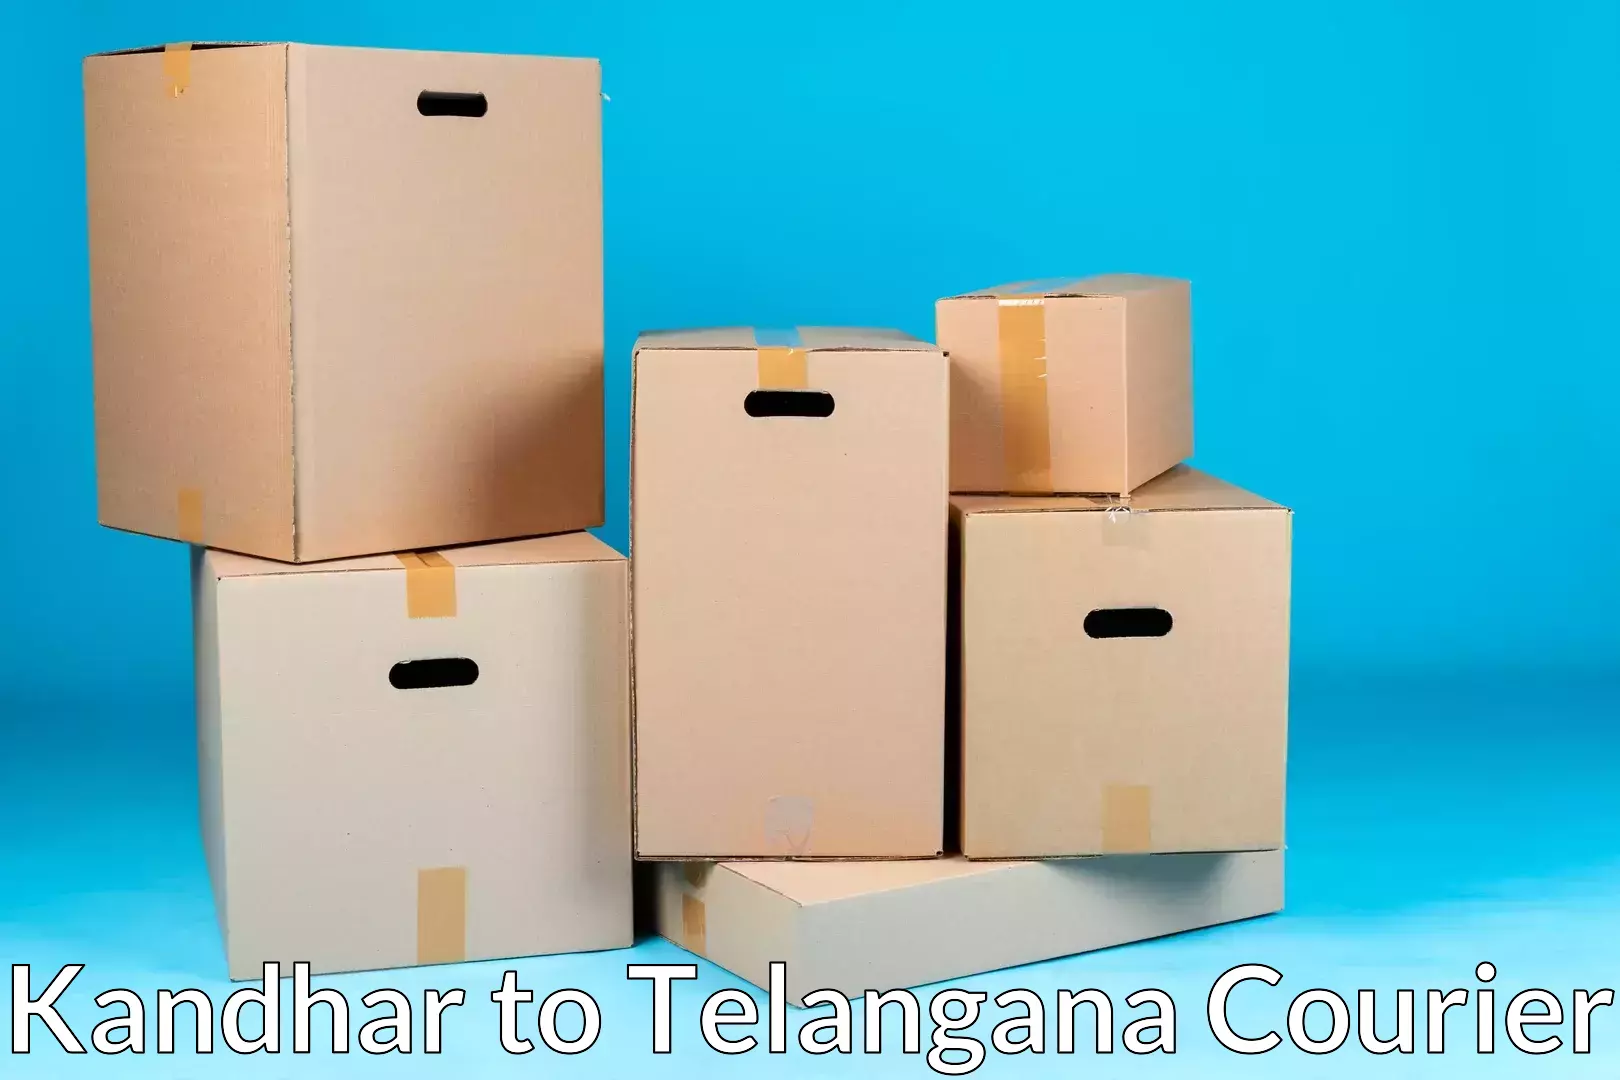 Affordable home movers Kandhar to Sirikonda